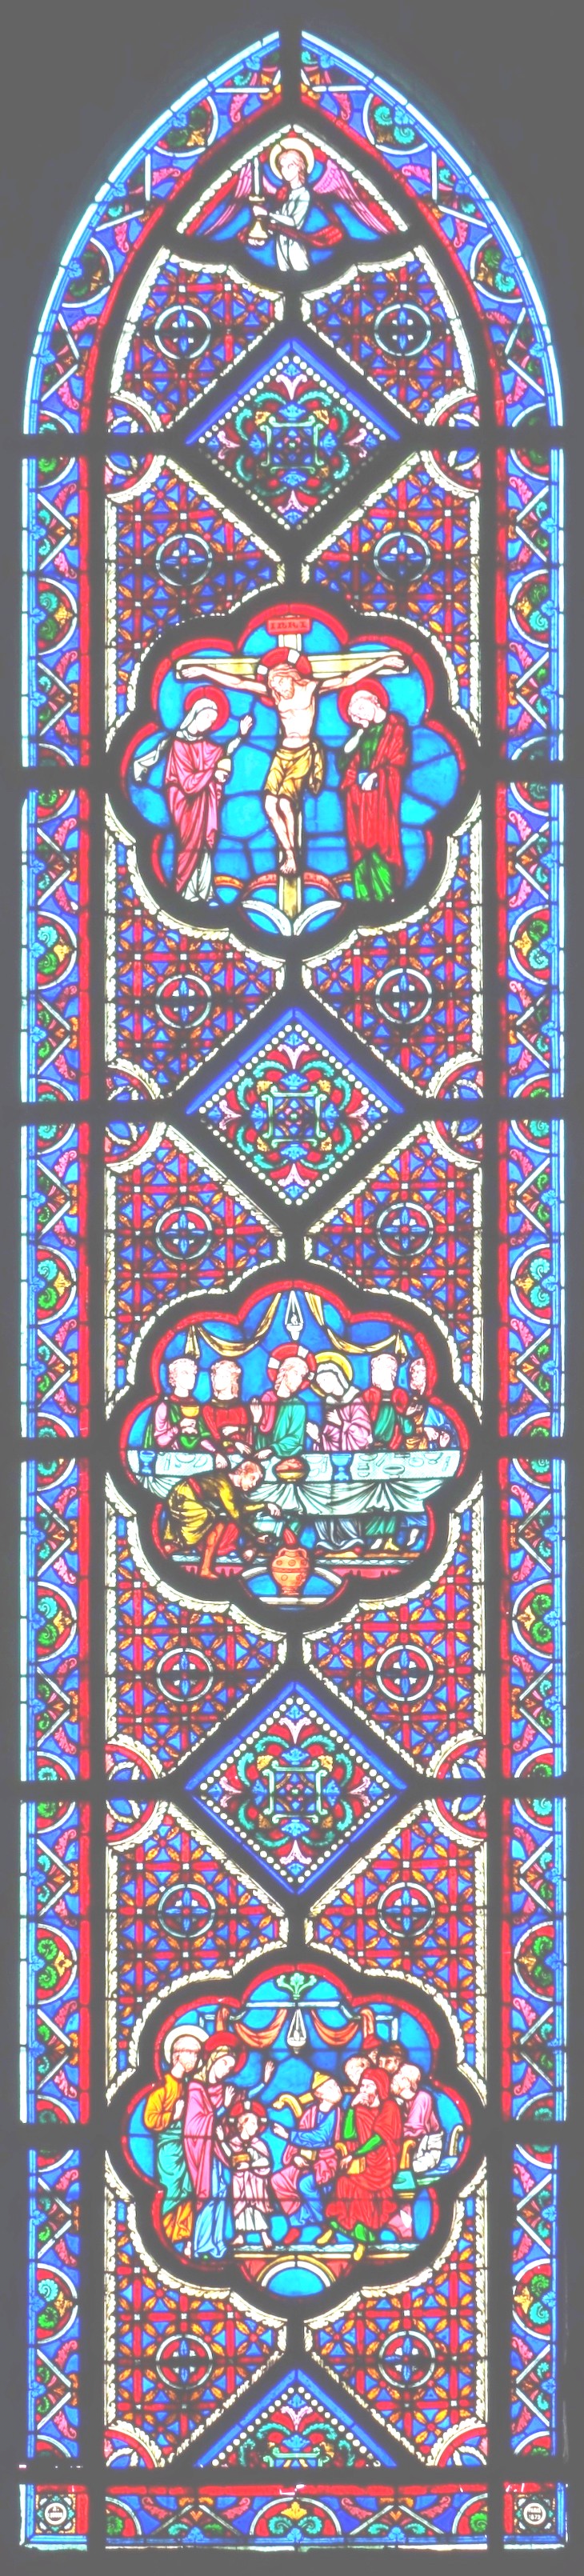 B4 - vitraux de la chapelle épiscopale saint-omer